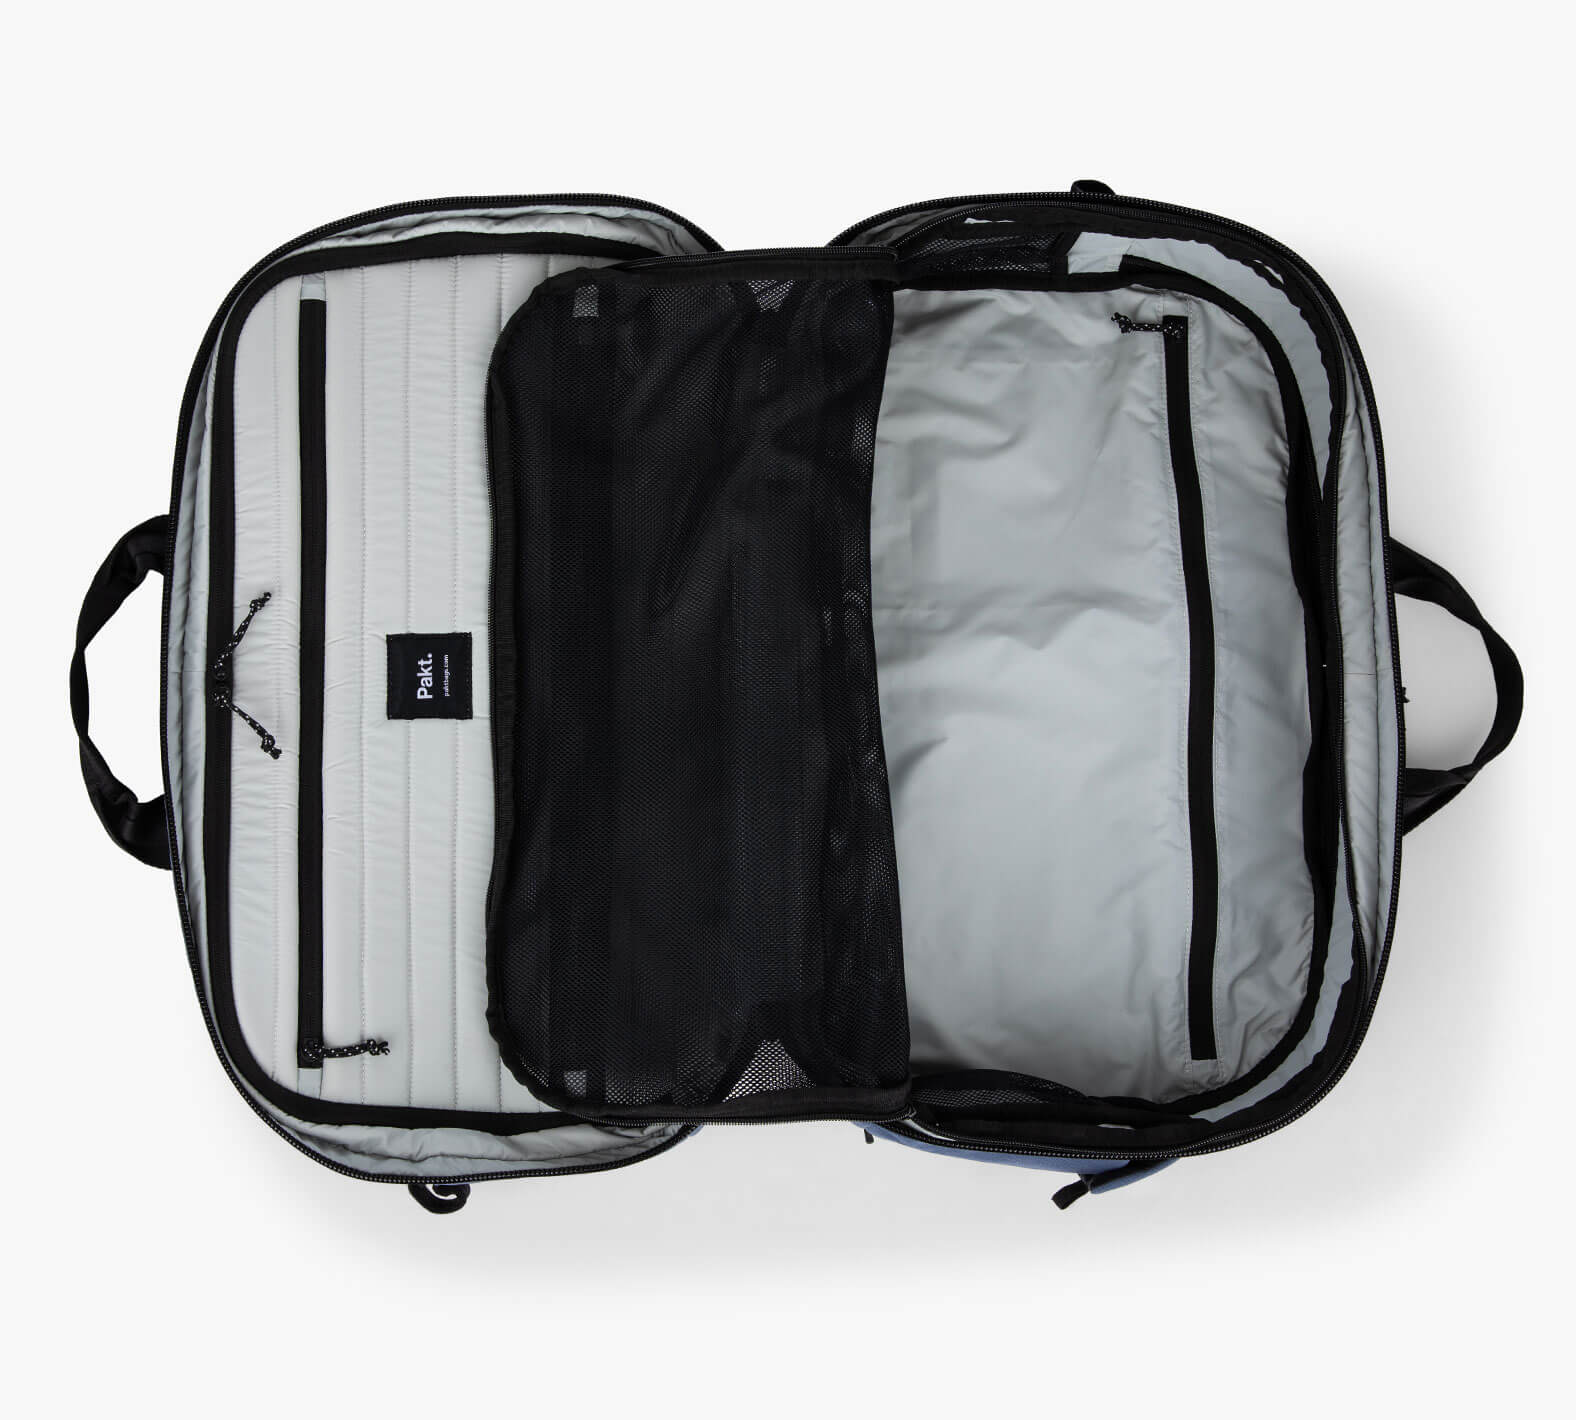 Safari Duo 01 Black 32L Backpack Bags